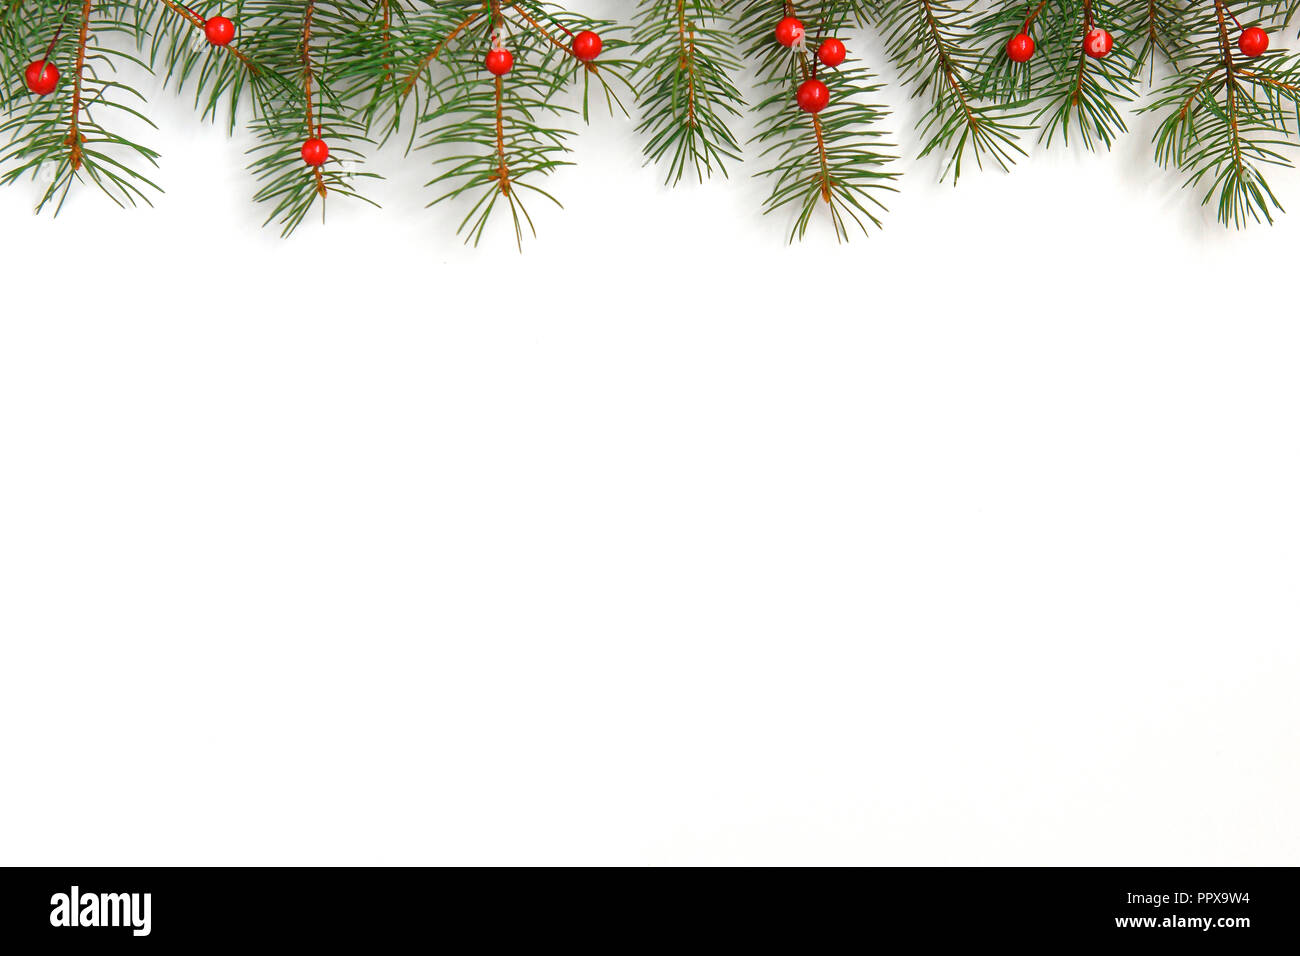 Sfondo di natale con albero di natale e bacche di colore rosso su bianco sullo sfondo di legno. Merry Christmas greeting card, telaio, banner. Vacanze inverno tema. Foto Stock